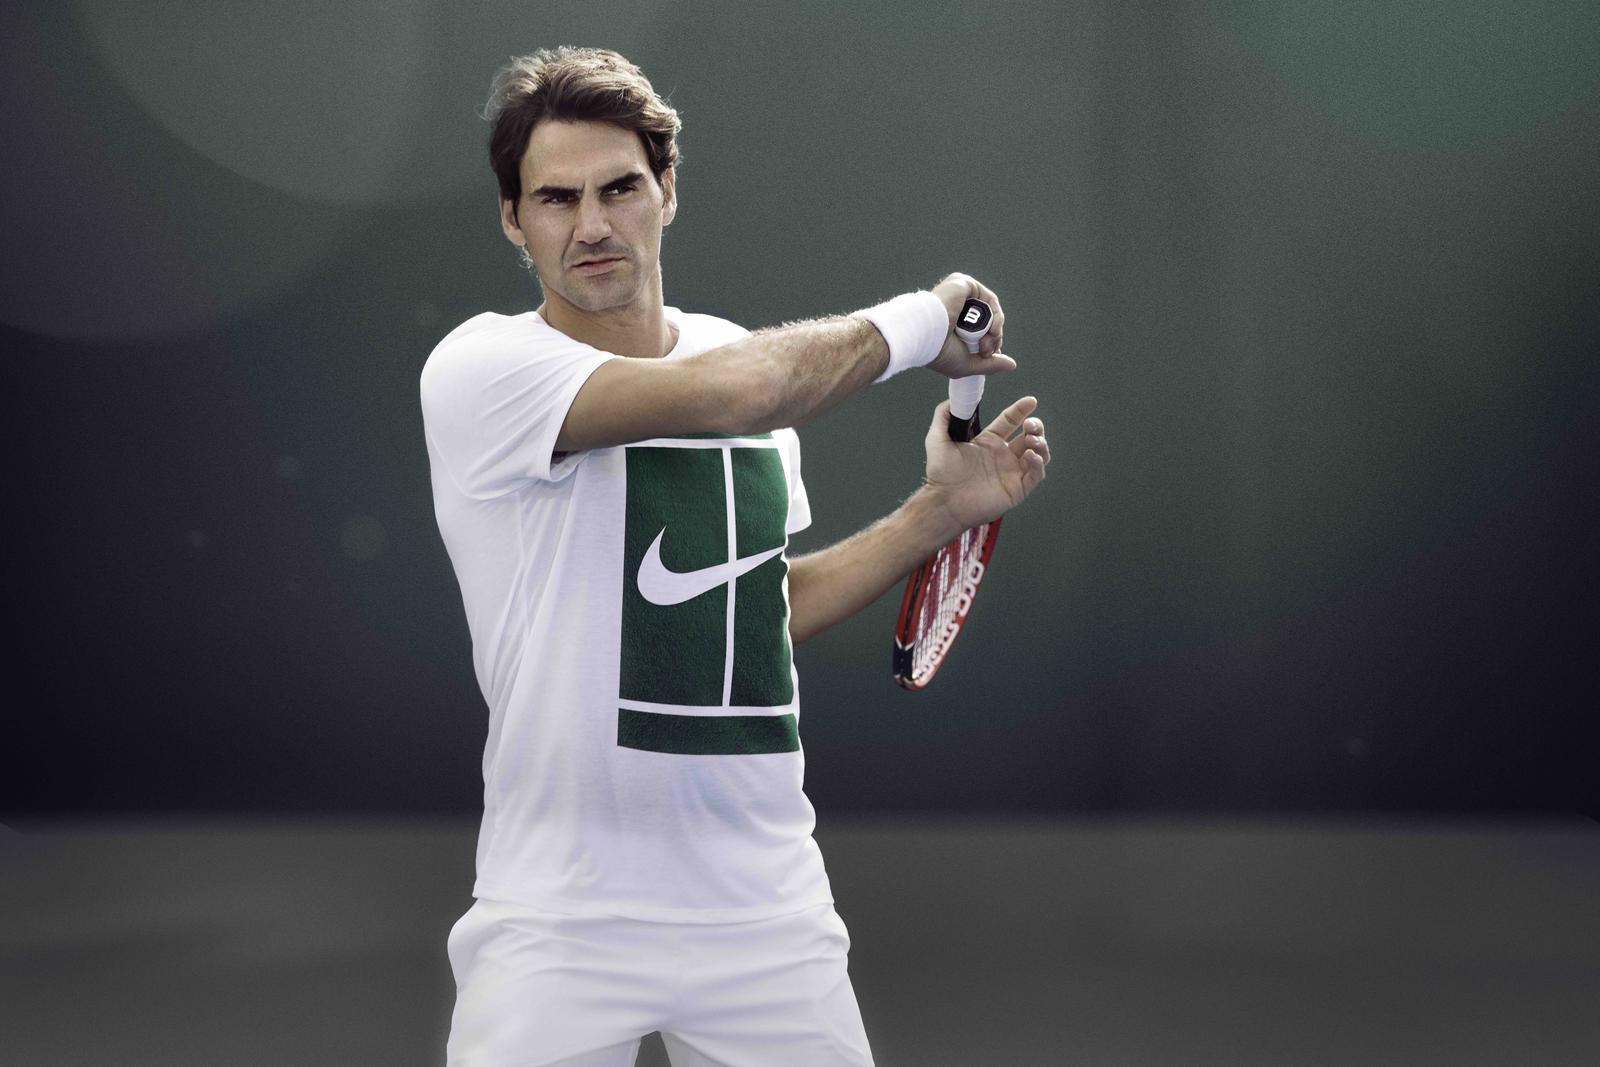 Roger_Federer_NikeCourt_1_copy_native_1600.jpg